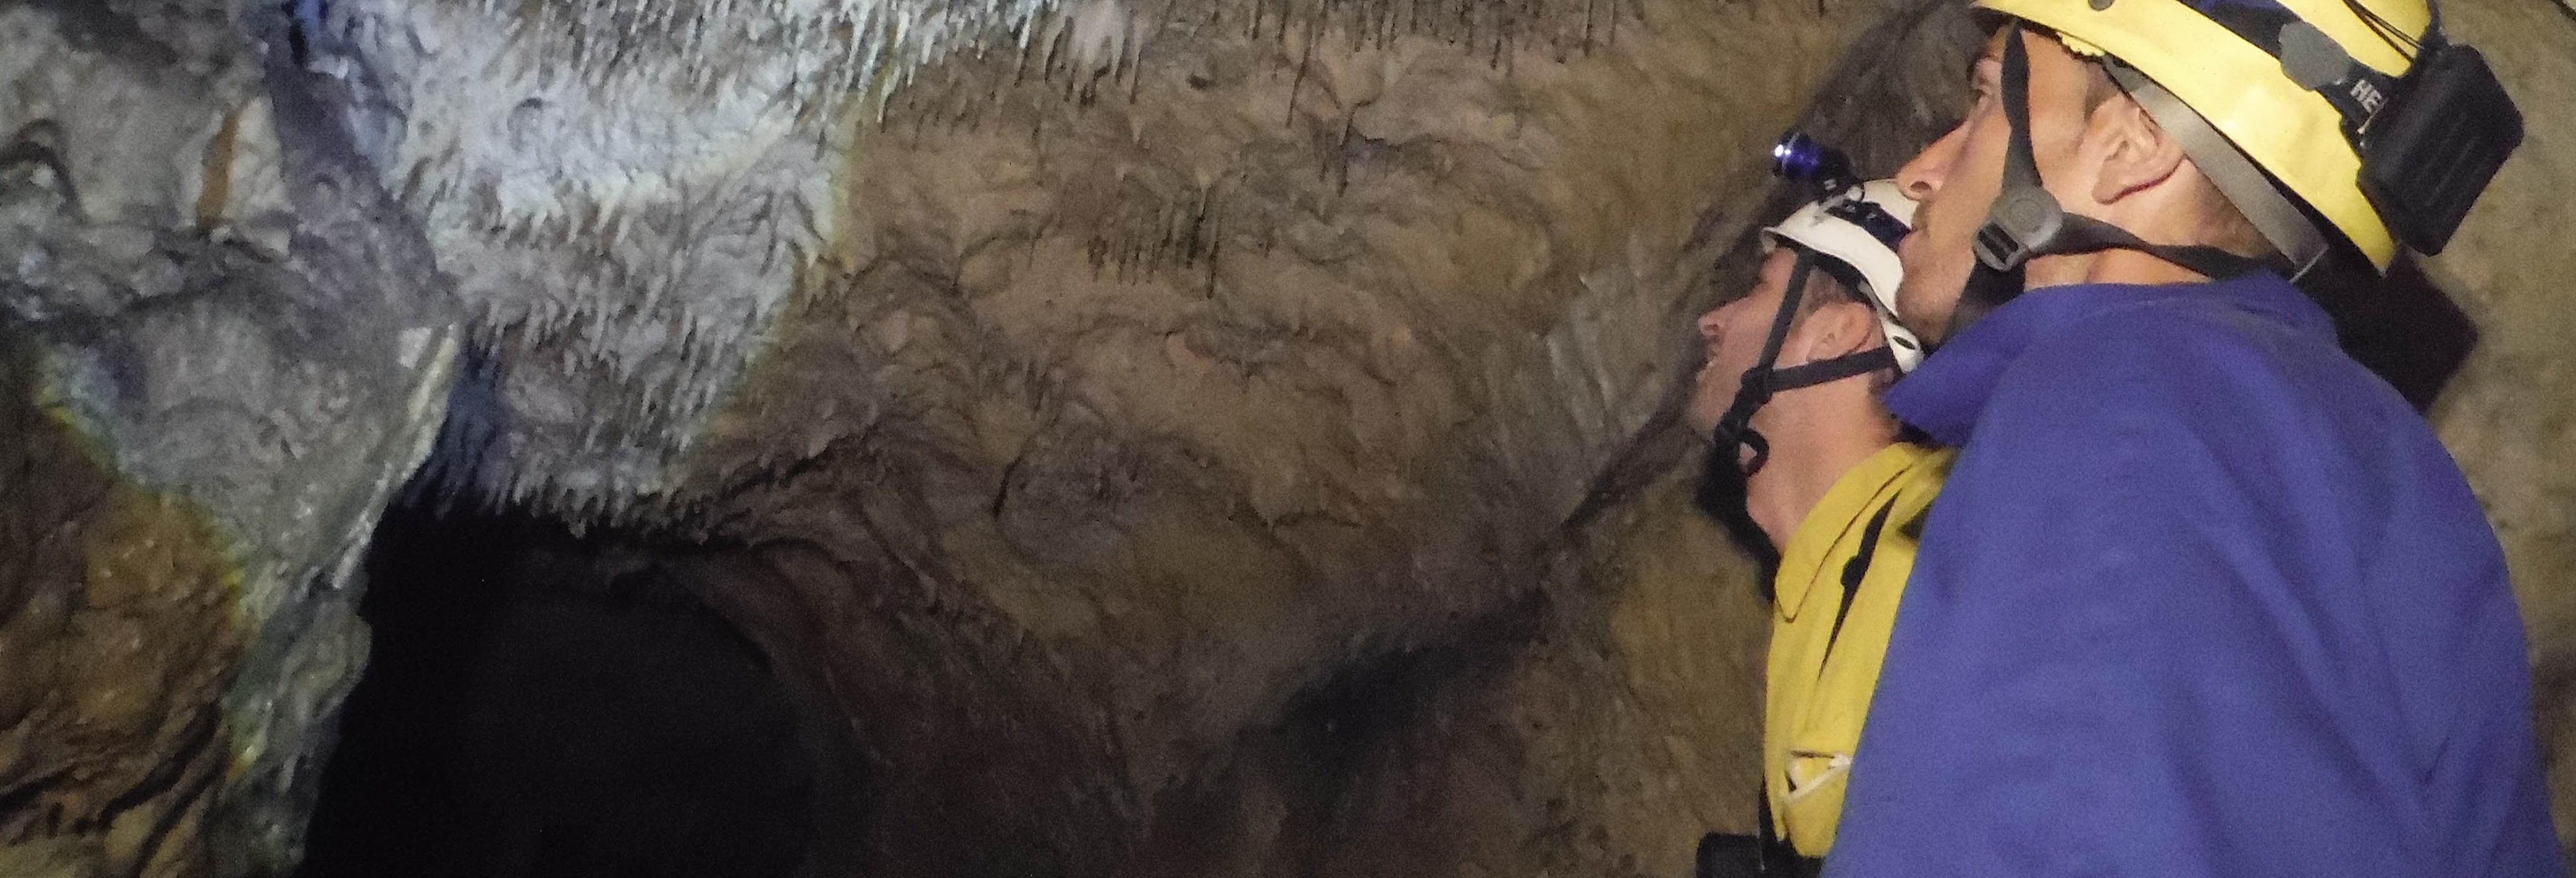 Espeleología en la cueva del Nozal desde Pesués